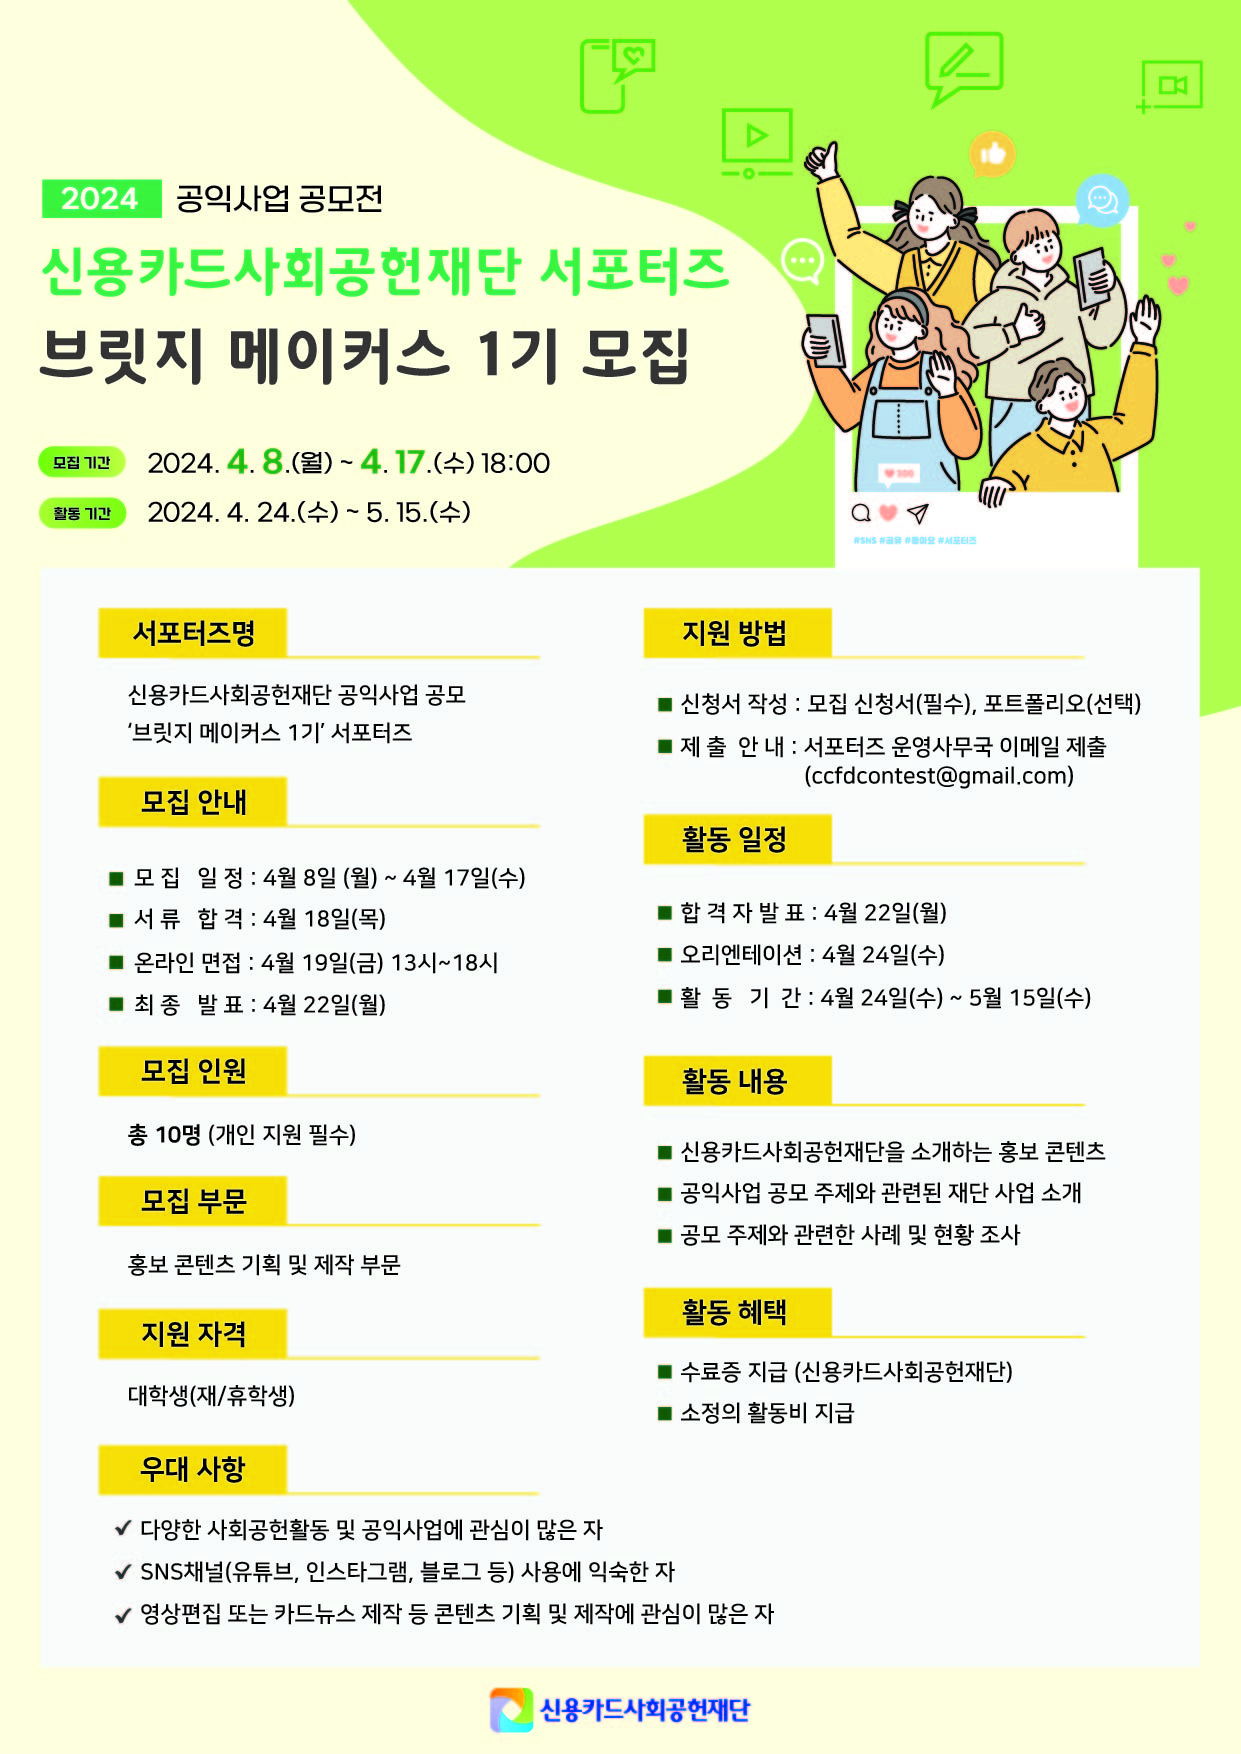 공익사업 공모전 홍보 서포터즈 ‘브릿지 메이커스’ 1기 모집